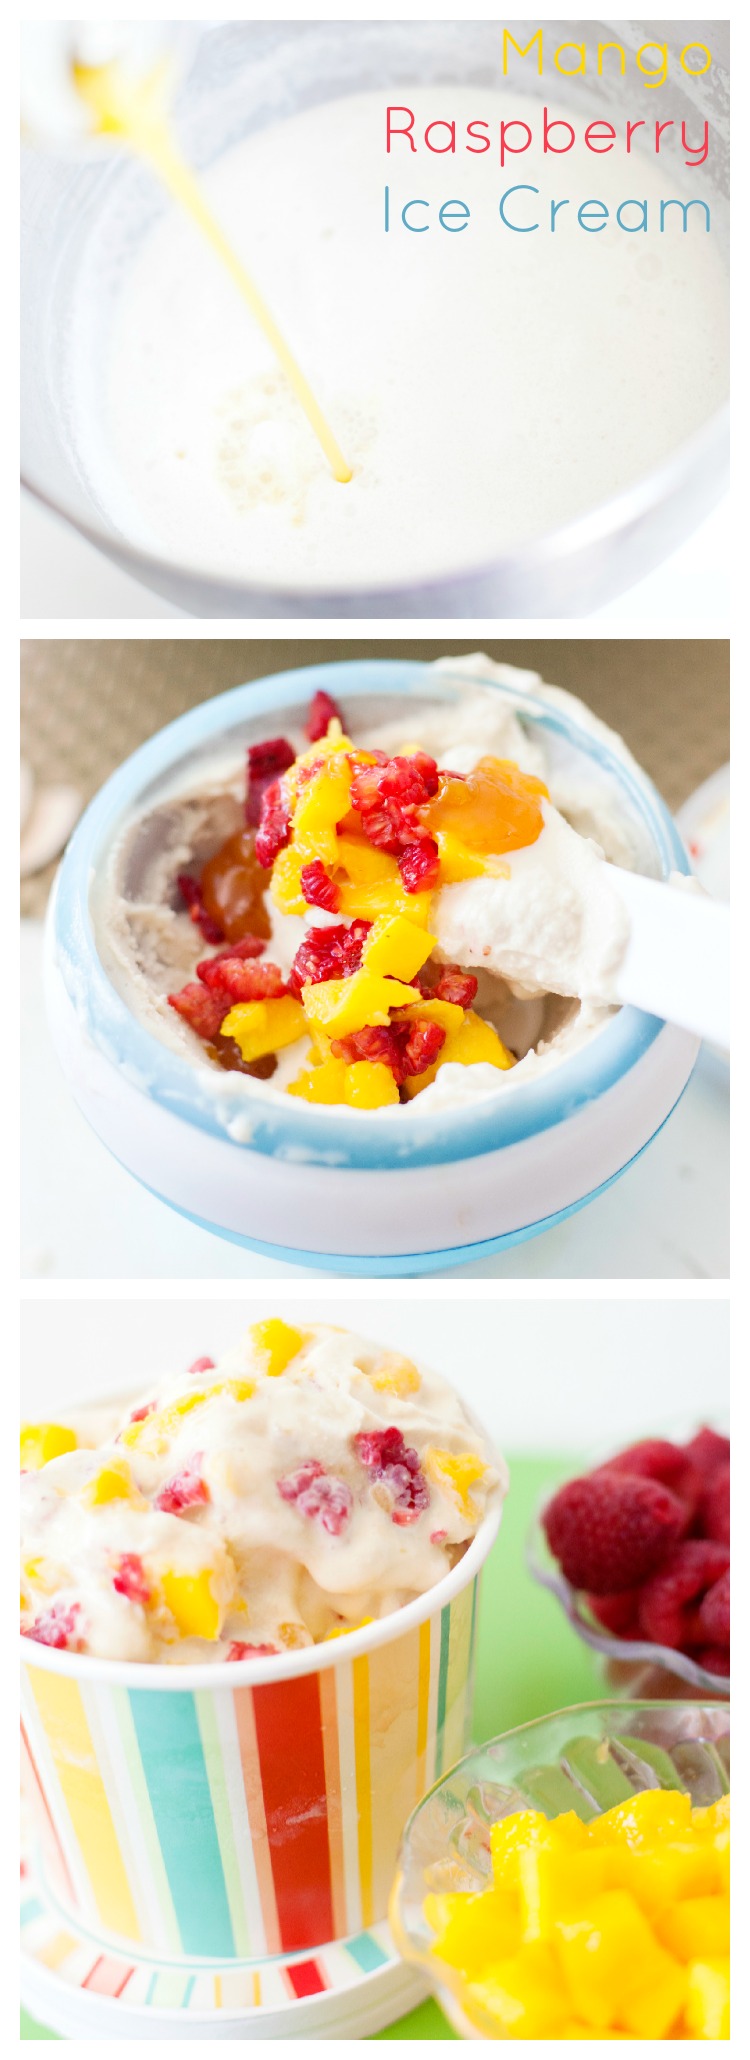 mango ice cream with raspberries